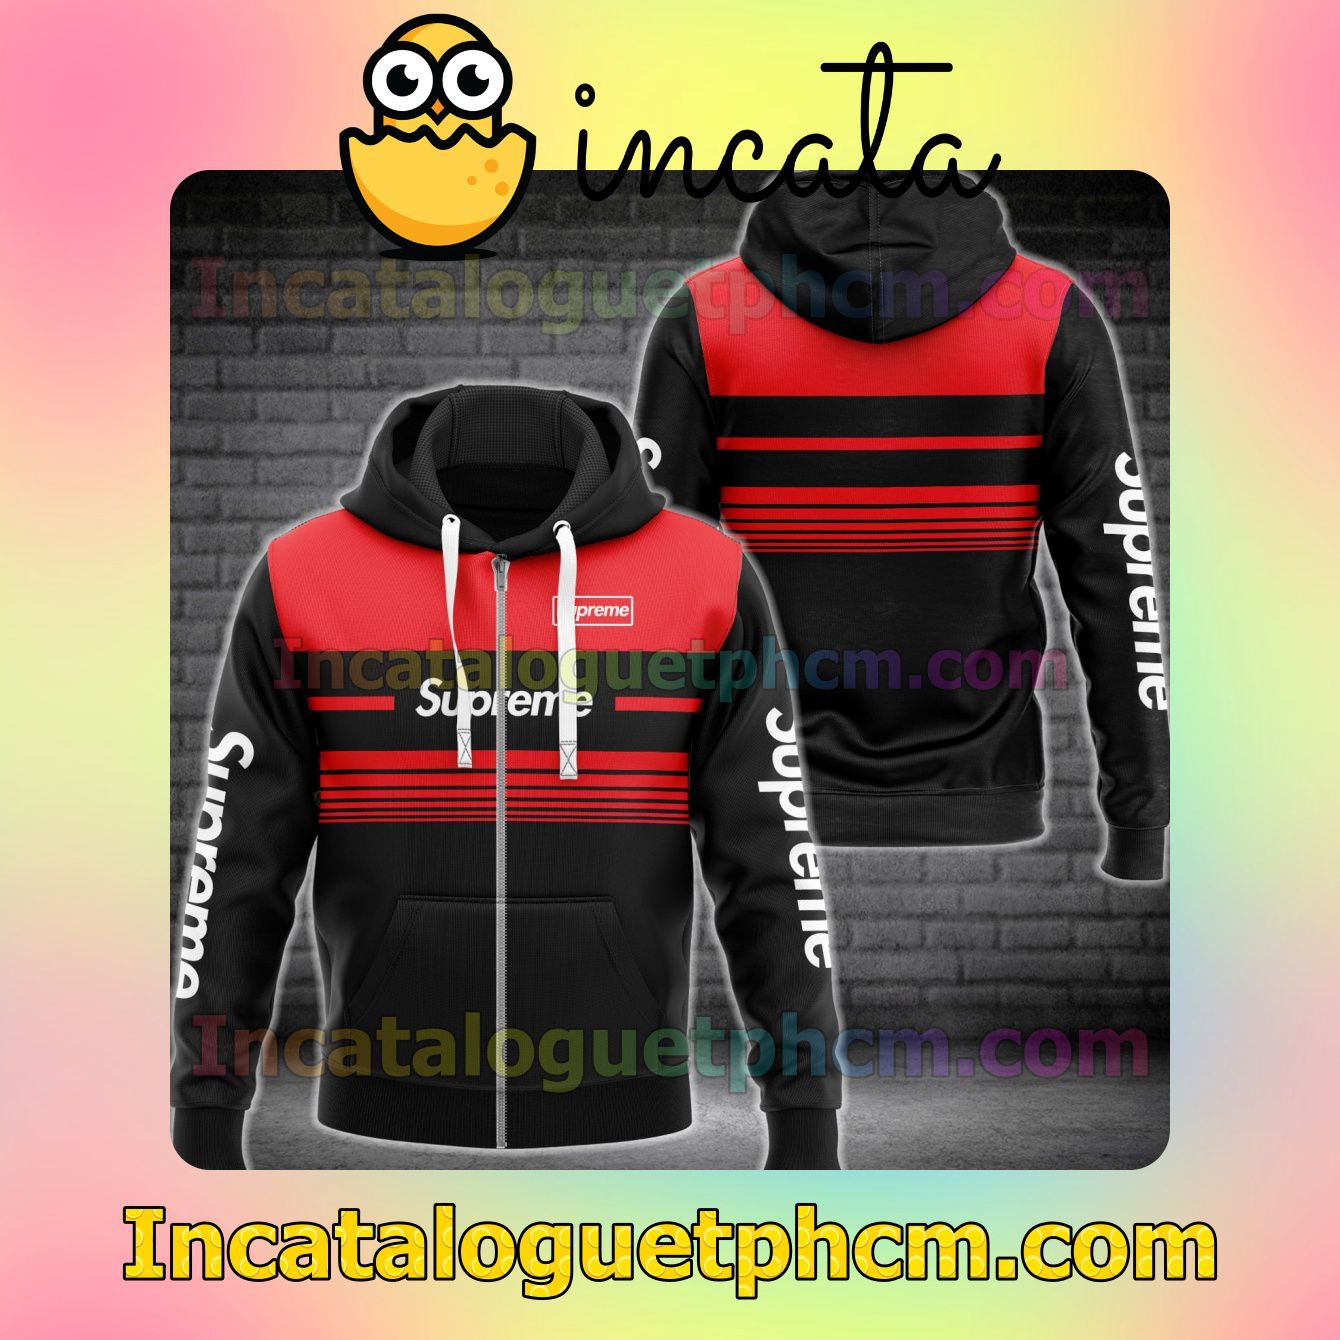 Free Supreme Luxury Black With Red Horizontal Stripes Long Sleeve Jacket Mens Hoodie